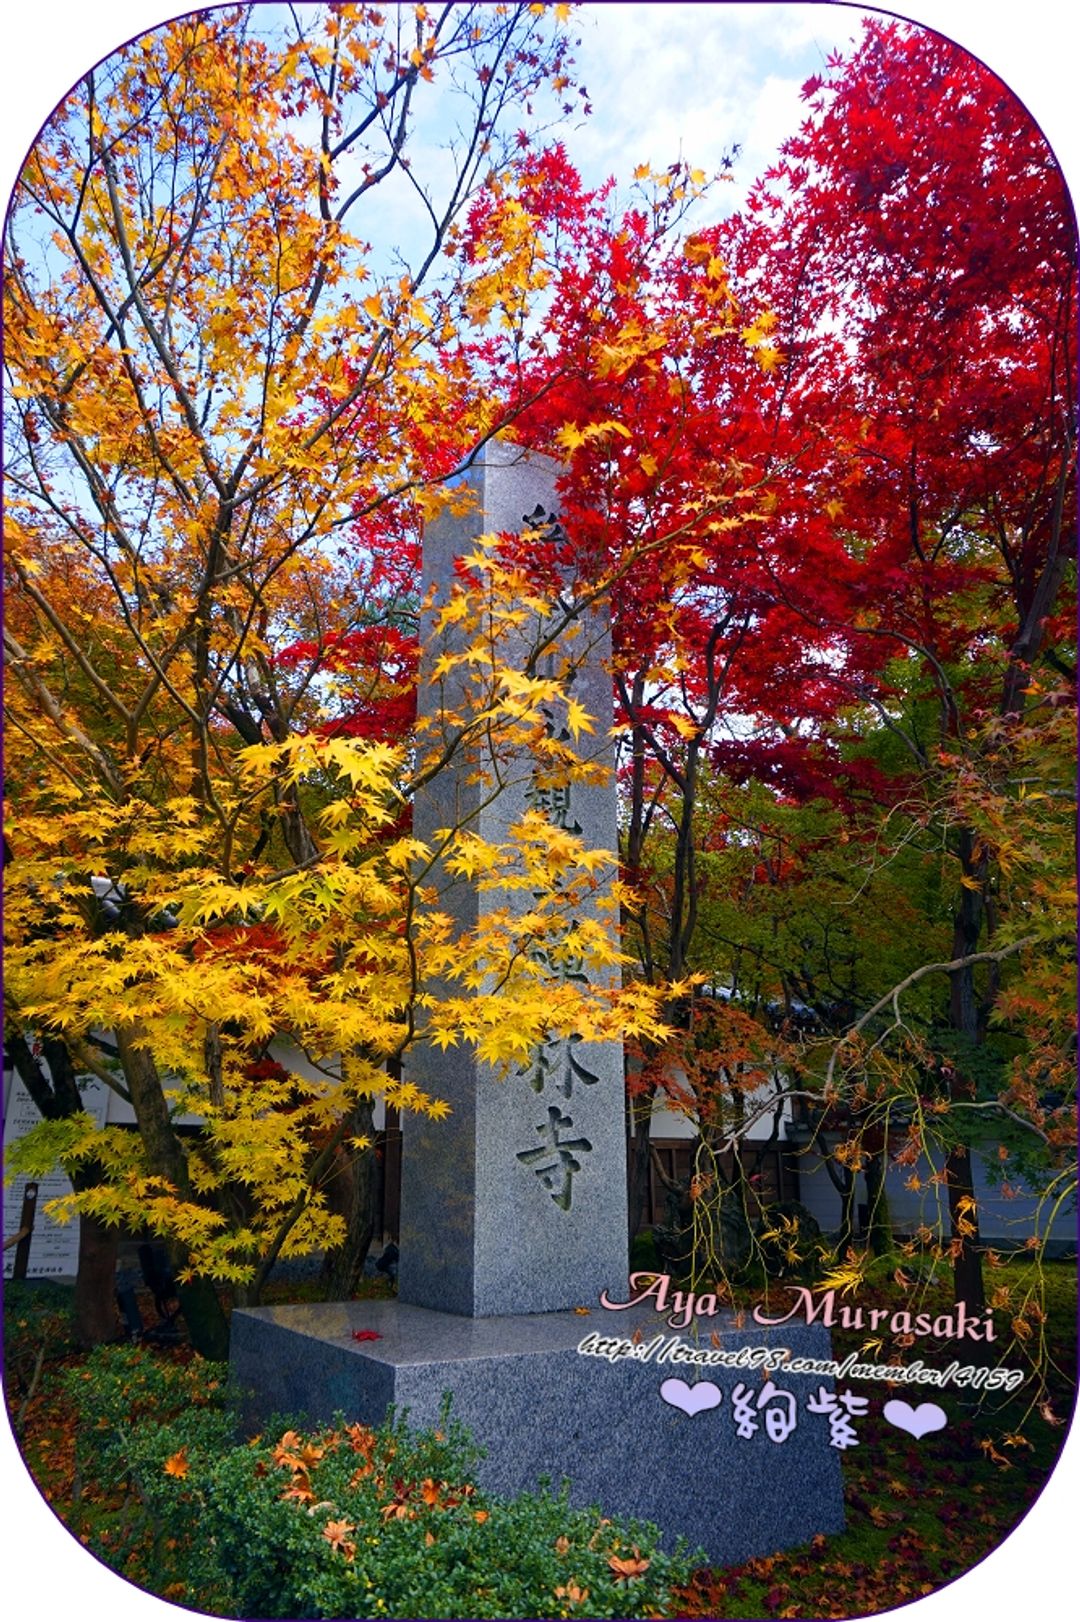 被雙色楓葉包圍的寺碑。